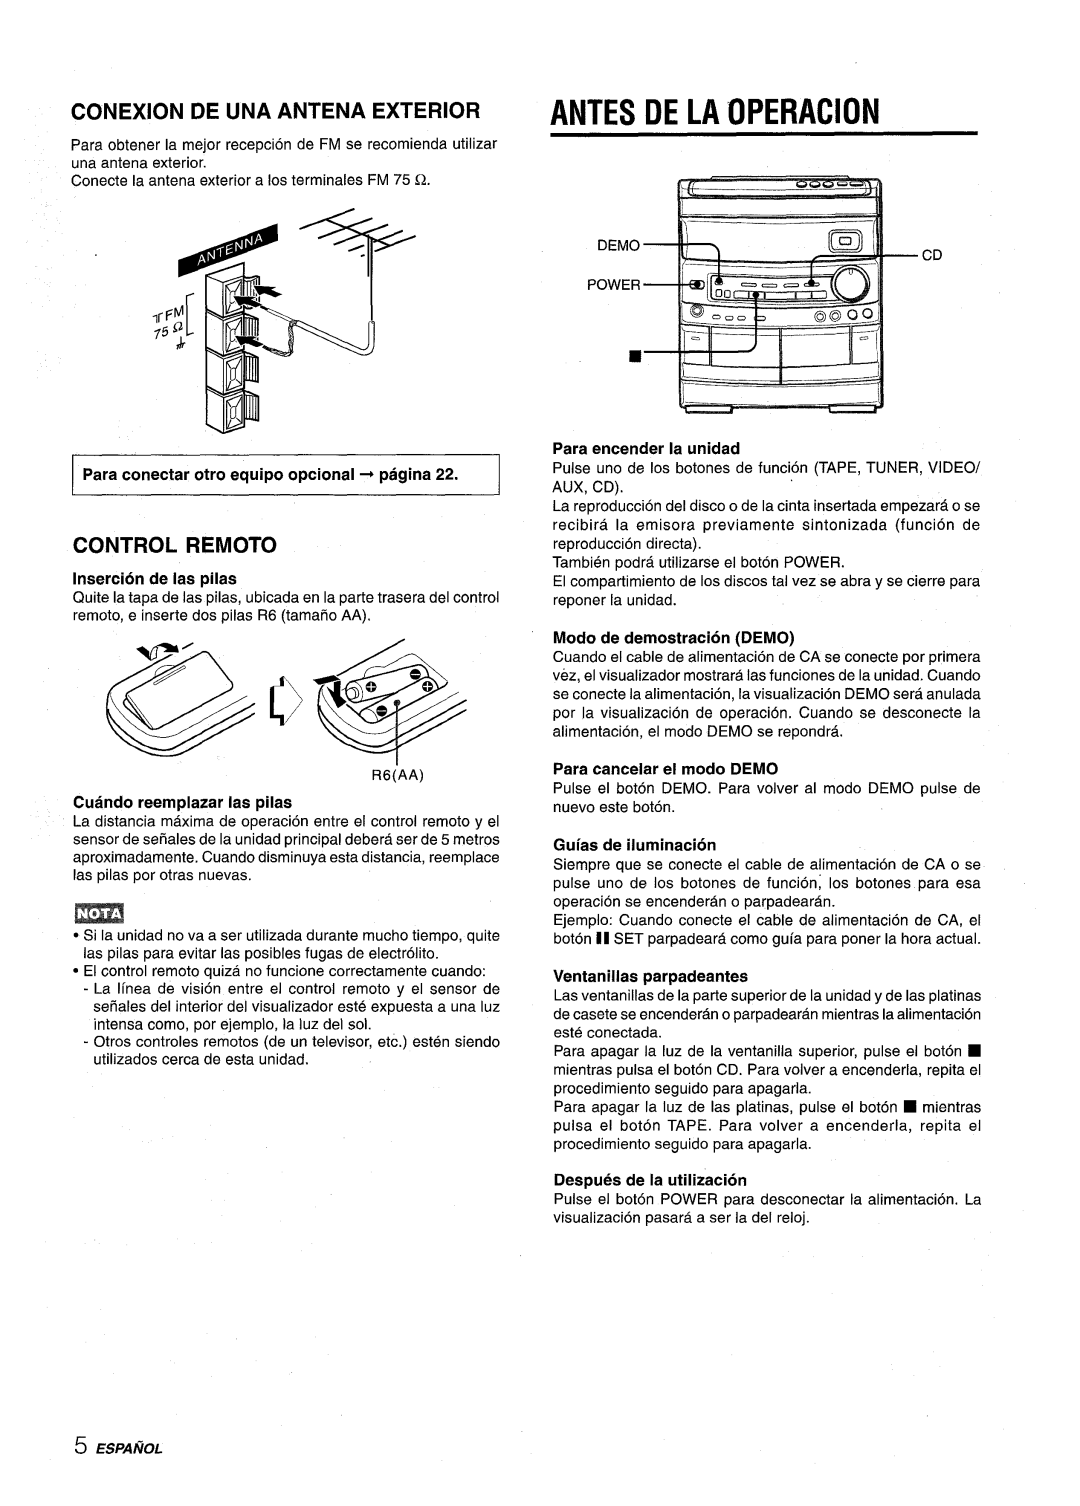 Aiwa NSX-AV800 manual Antes De La Operacion, Conexion De Una Antena Exterior, Control Remoto, Insertion de Ias pilas 